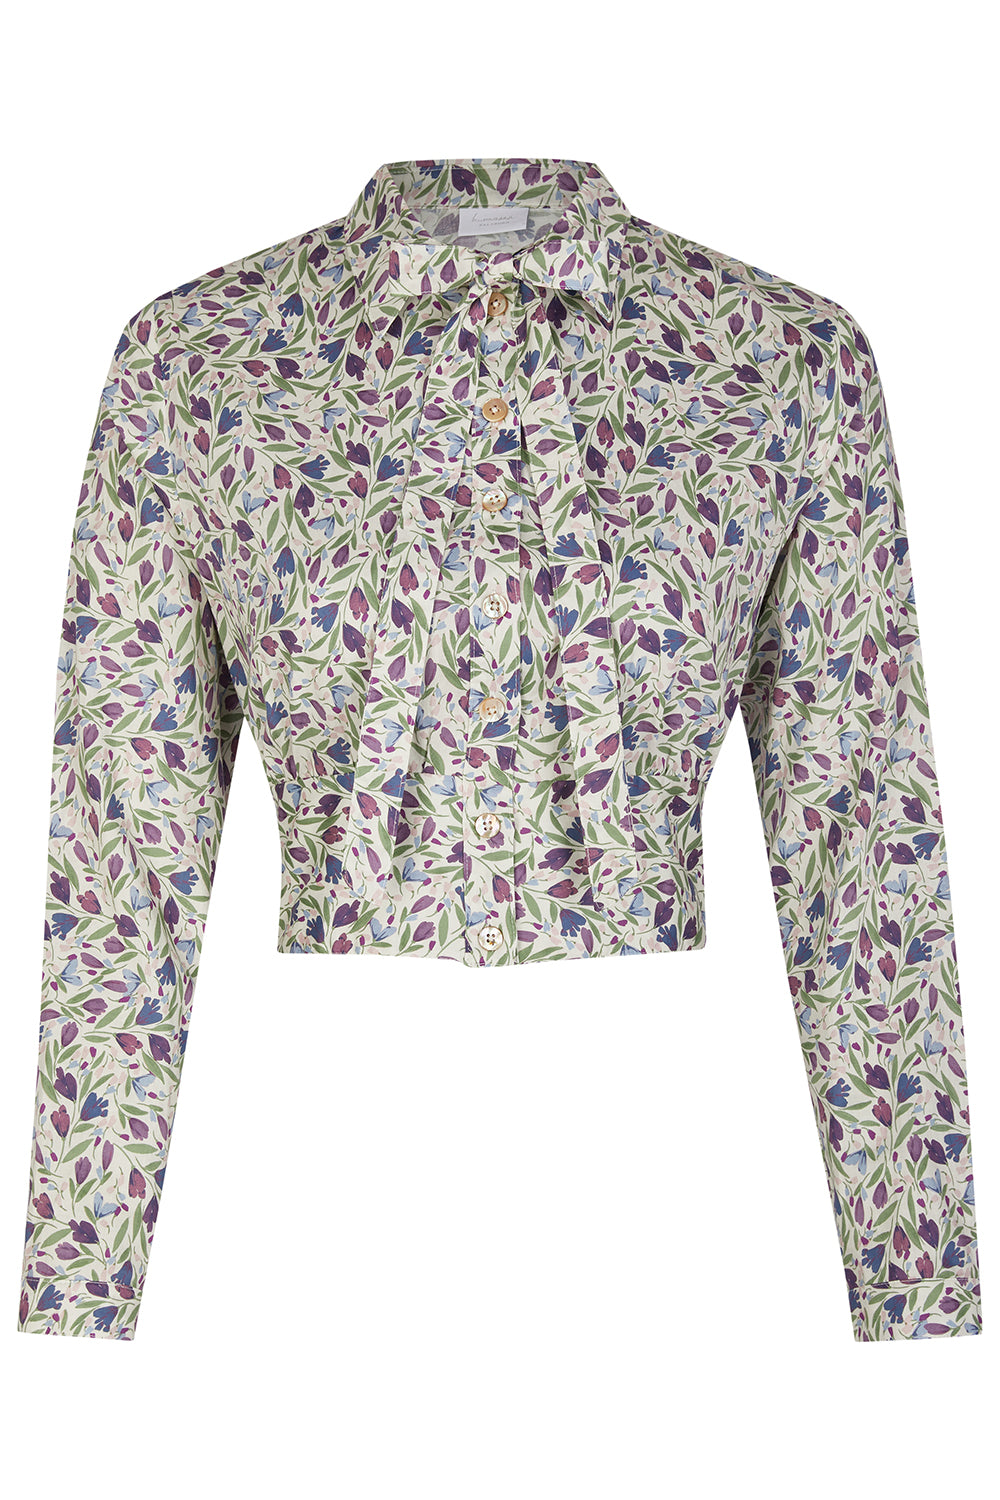 Women's blouse Kronach